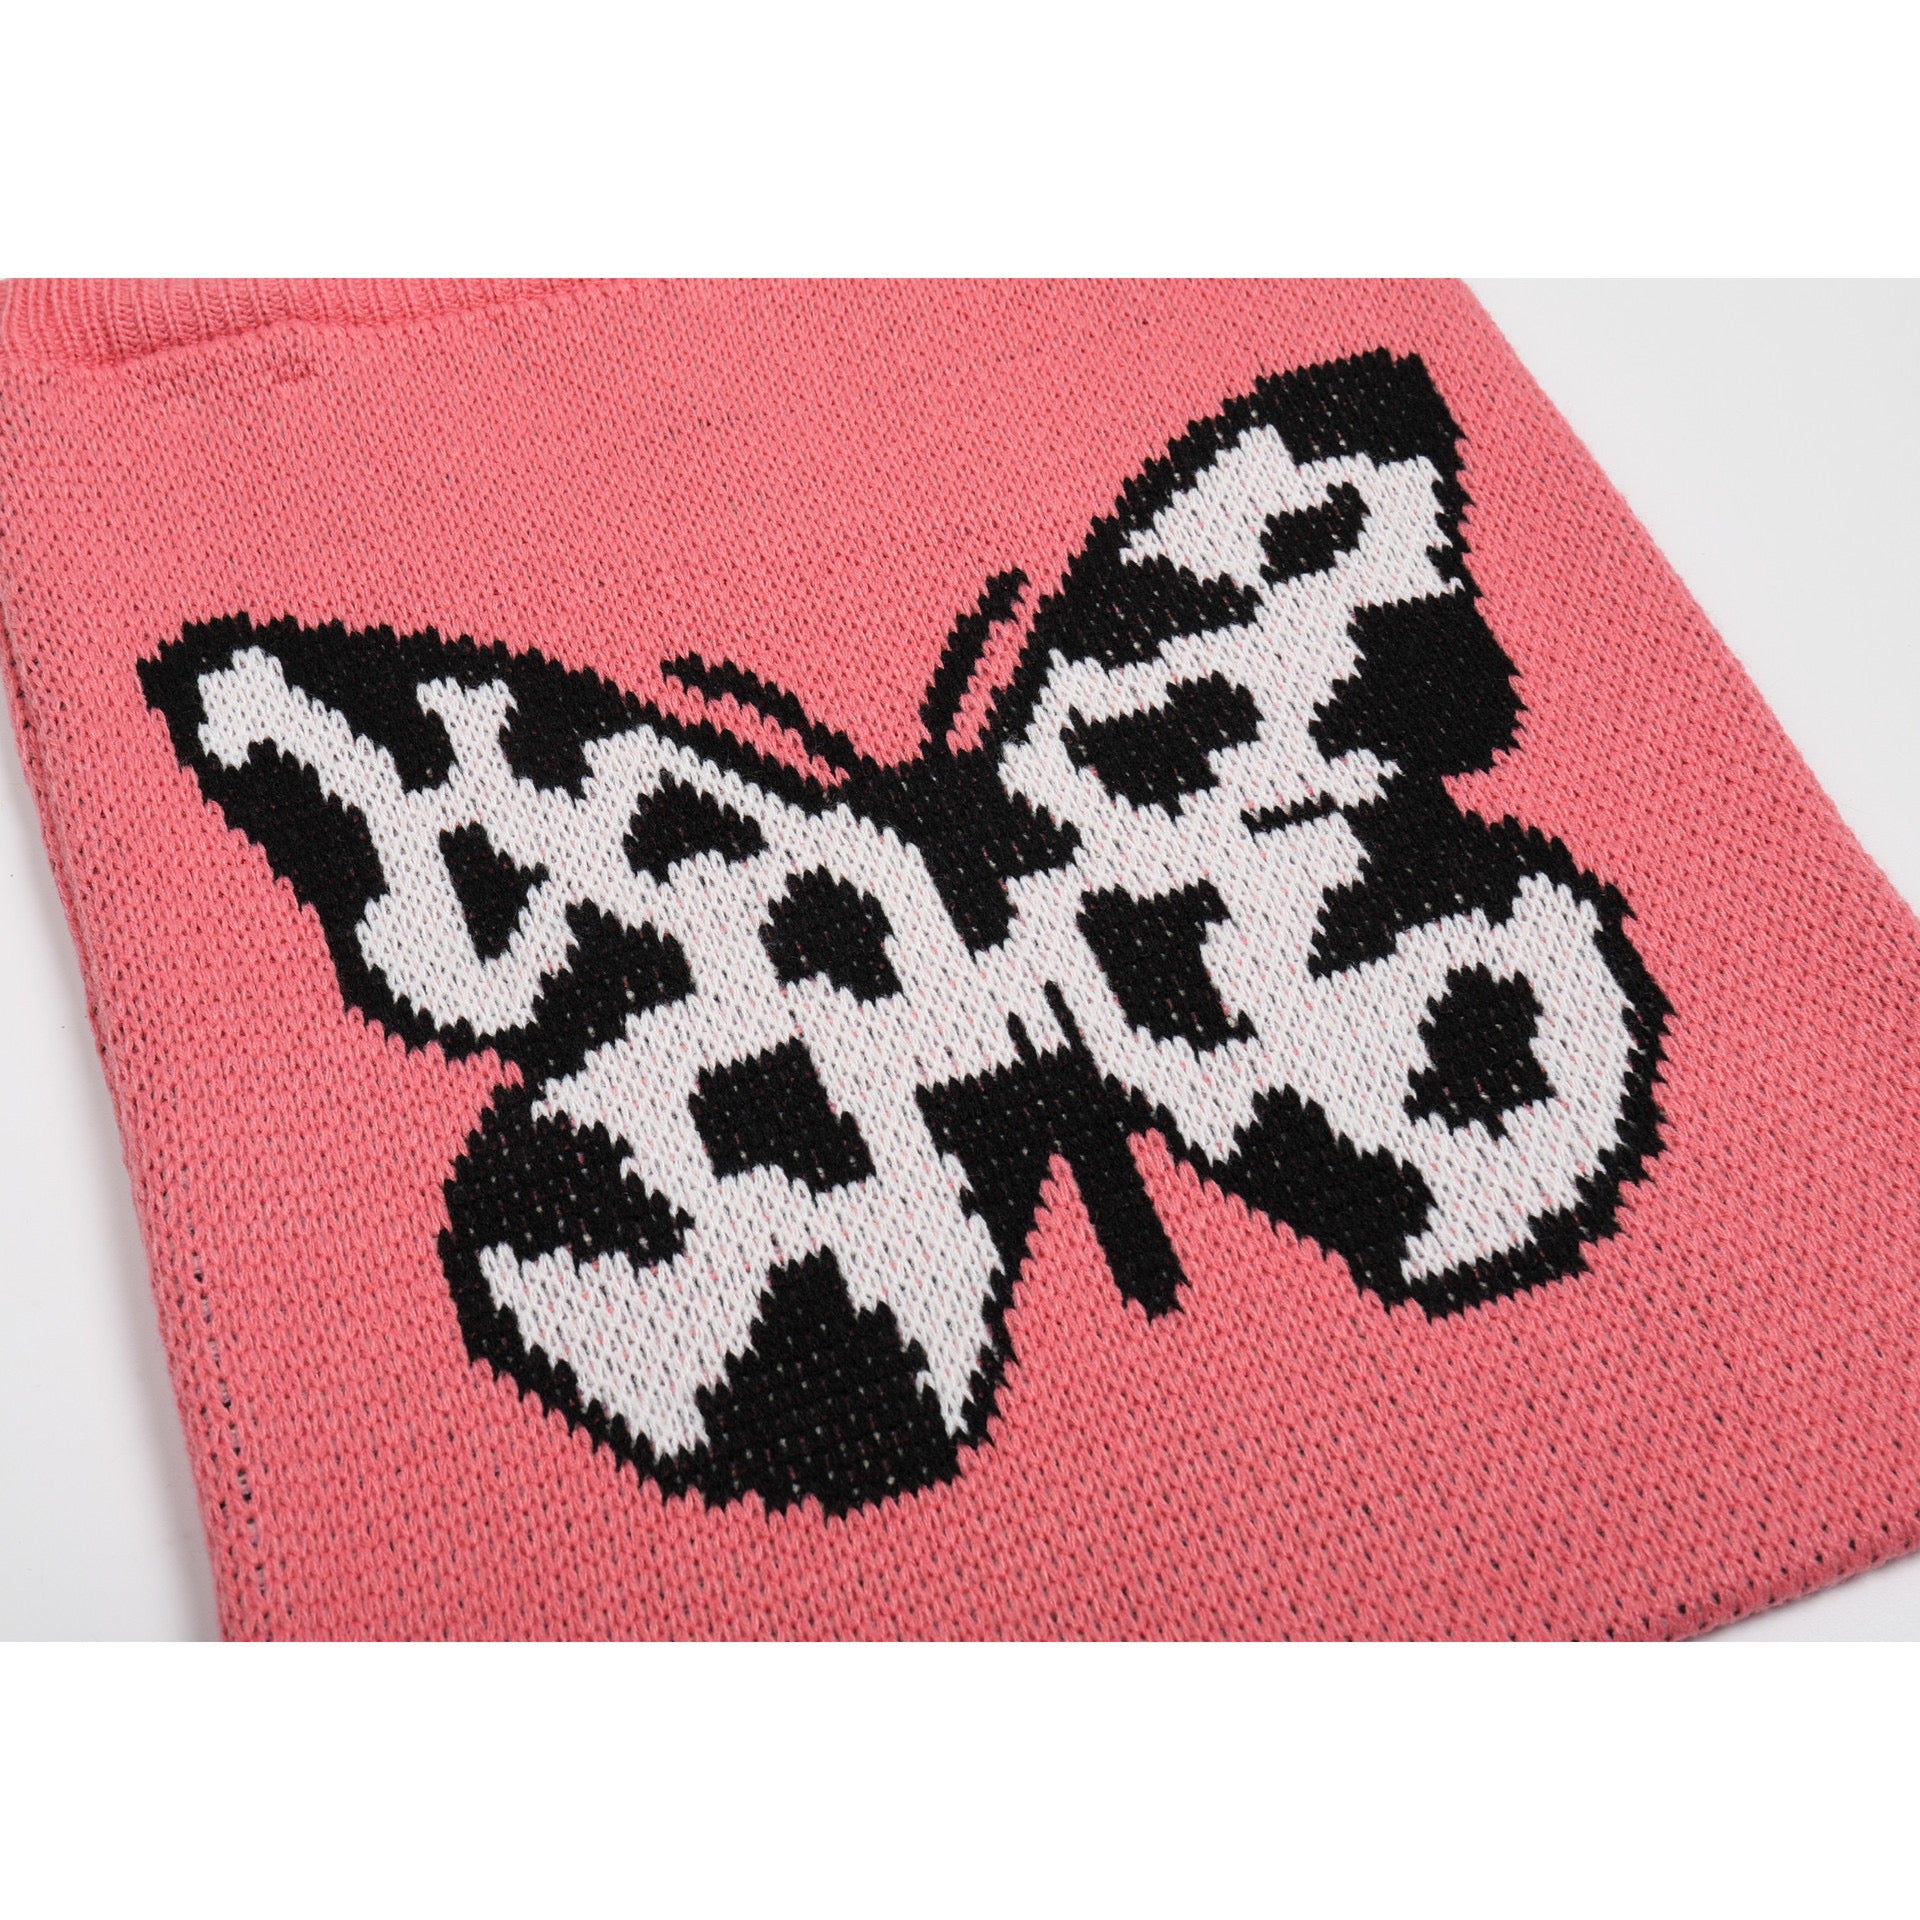 Artist Butterfly Pink Bag